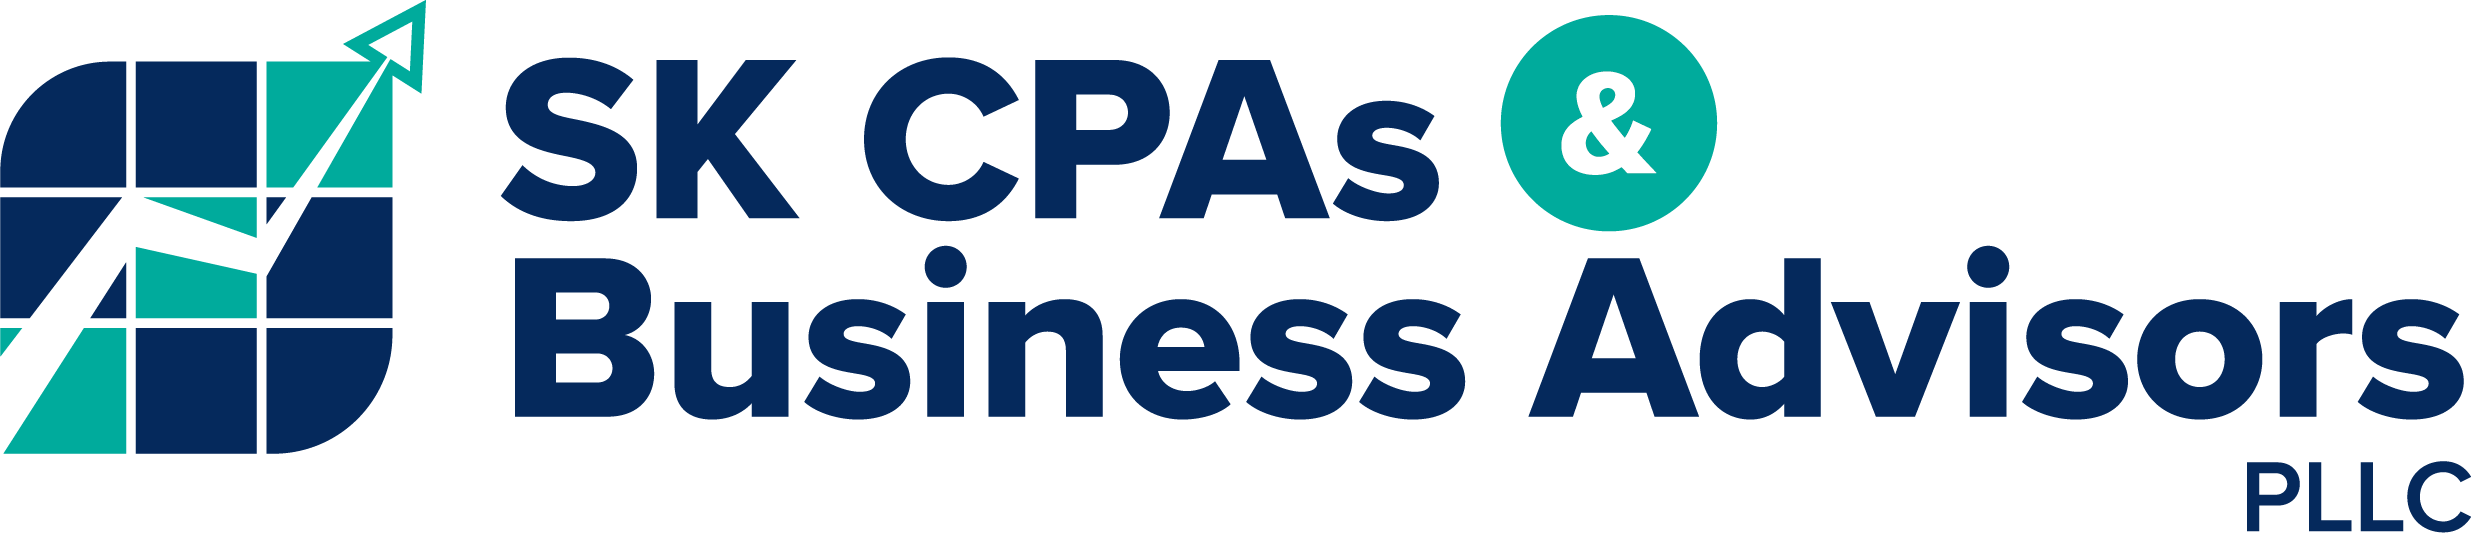 SK CPAs & Business Advisors PLLC